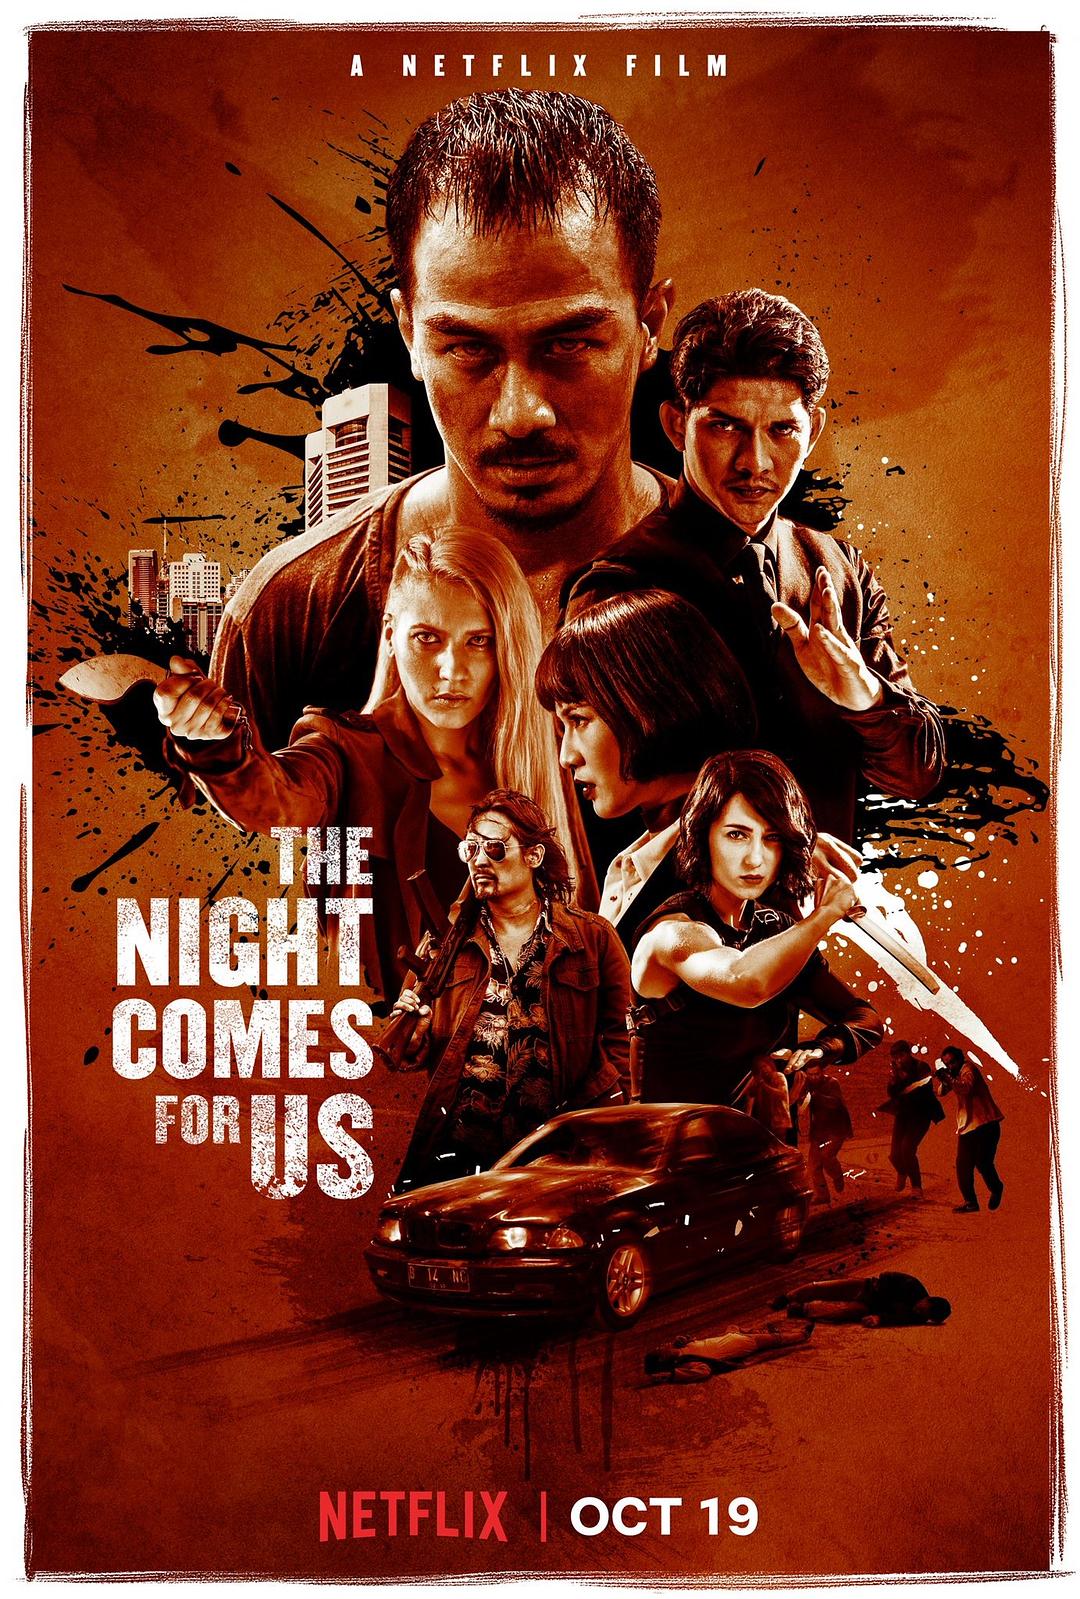 嗜人之夜 / 黑夜降临 / 噬人之夜 / 夜幕降临 / 我们的夜晚来临 [DIY Netflix简繁中字 ] The Night Comes for Us 2018 1080p Blu-ray AVC DD 5.1-Palm@MTeam    [21.26 GB  ]-1.jpg